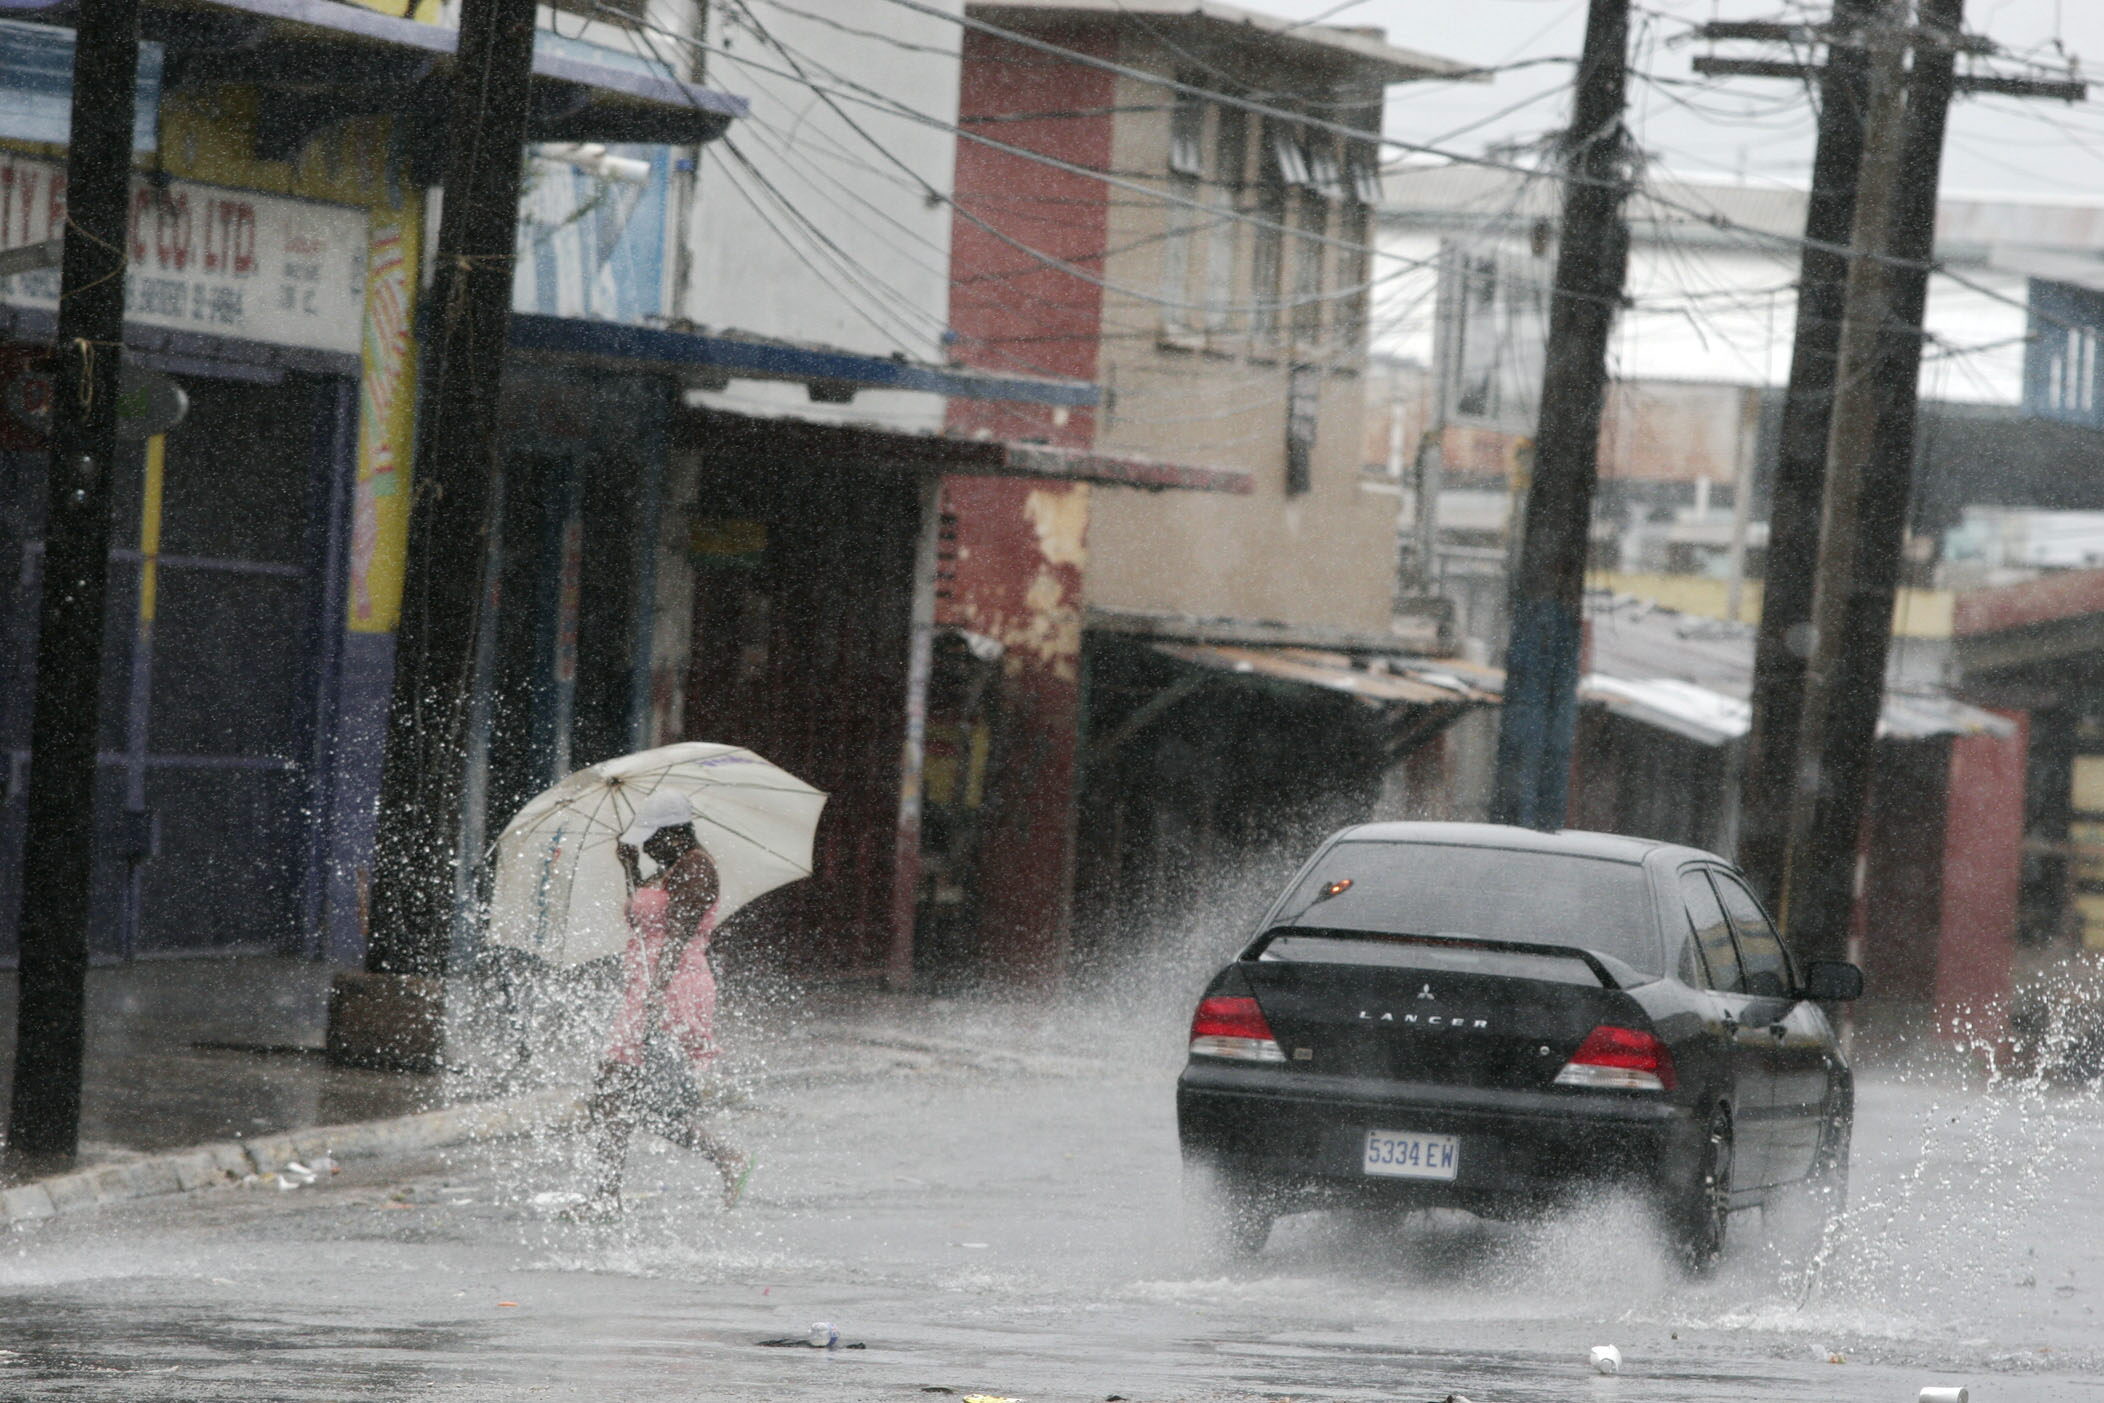 La permanencia en el Mar Caribe del sistema de baja presión durante los próximos días ocasionará fuertes lluvias en el Pacífico sur del país, según el pronóstico del Instituto Meteorológico Nacional (IMN).